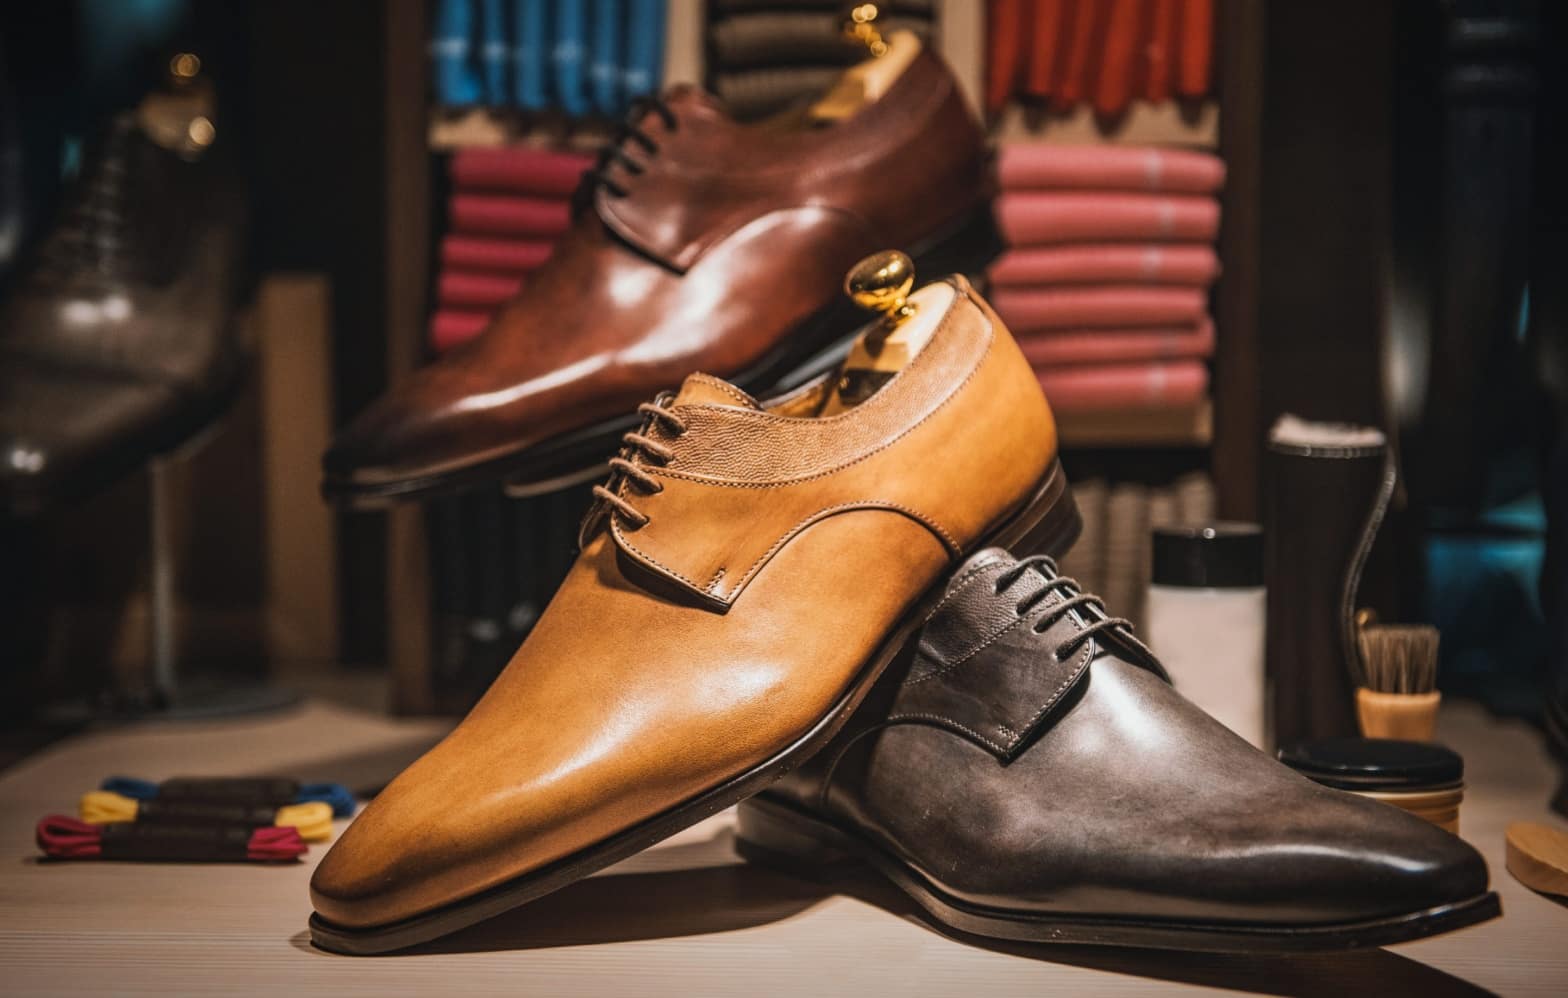 Chaussure homme tendance – Les valeurs sûres du vintage  Chaussures homme, Chaussure  homme tendance, Chaussure homme mode